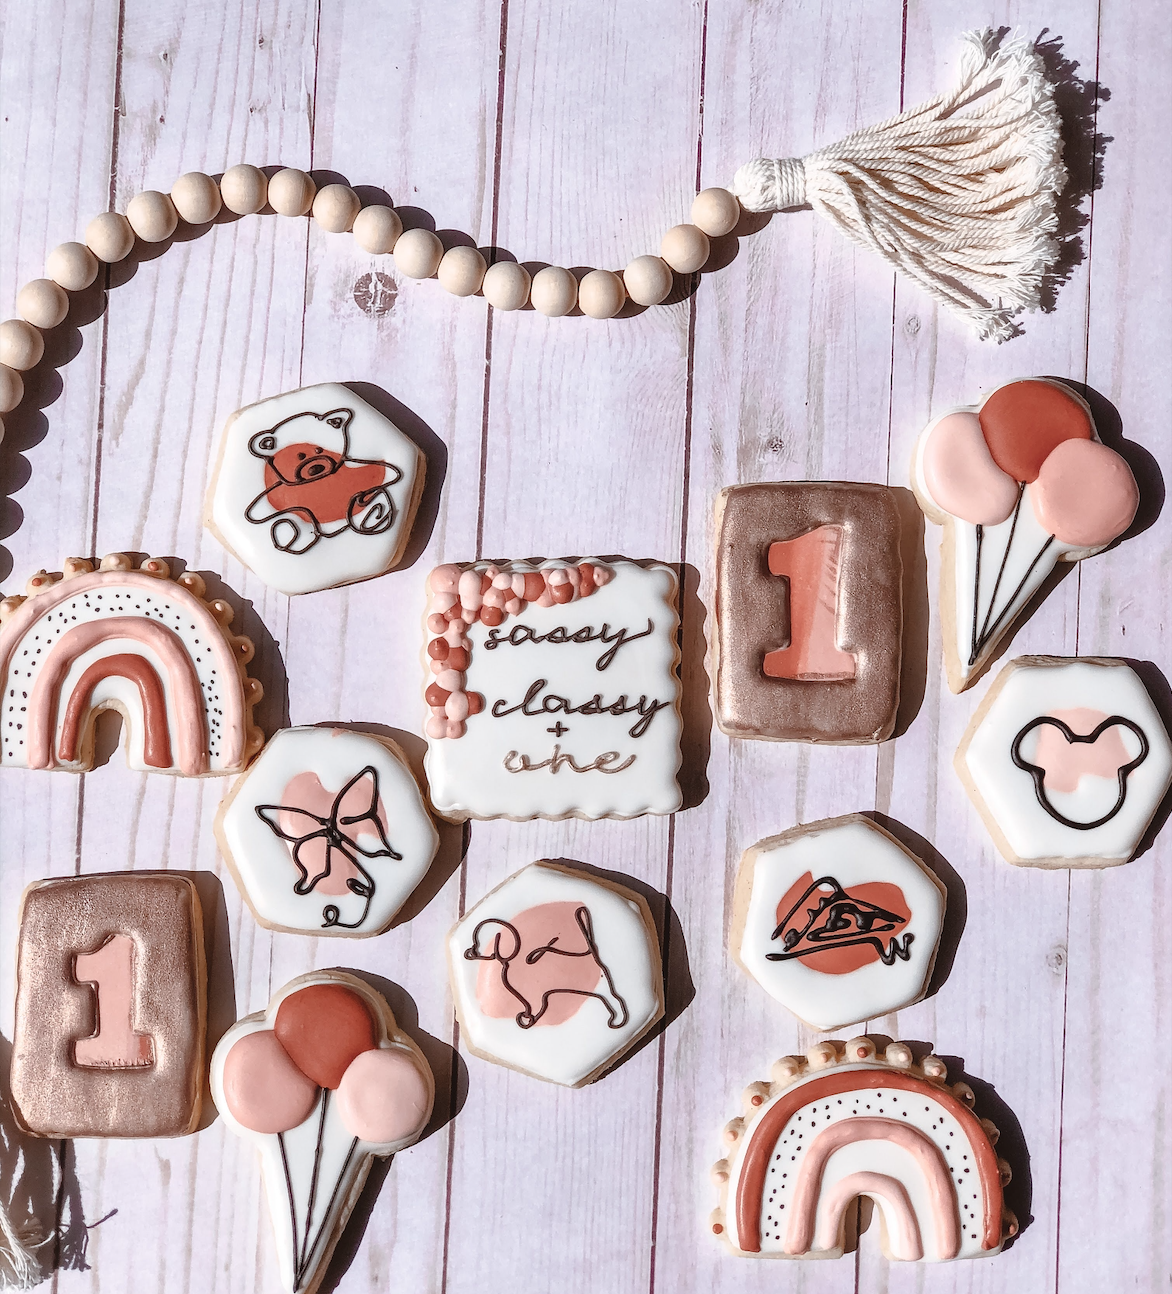 Cookie season is upon us: A Sugar Angel’s Sugar Cookies